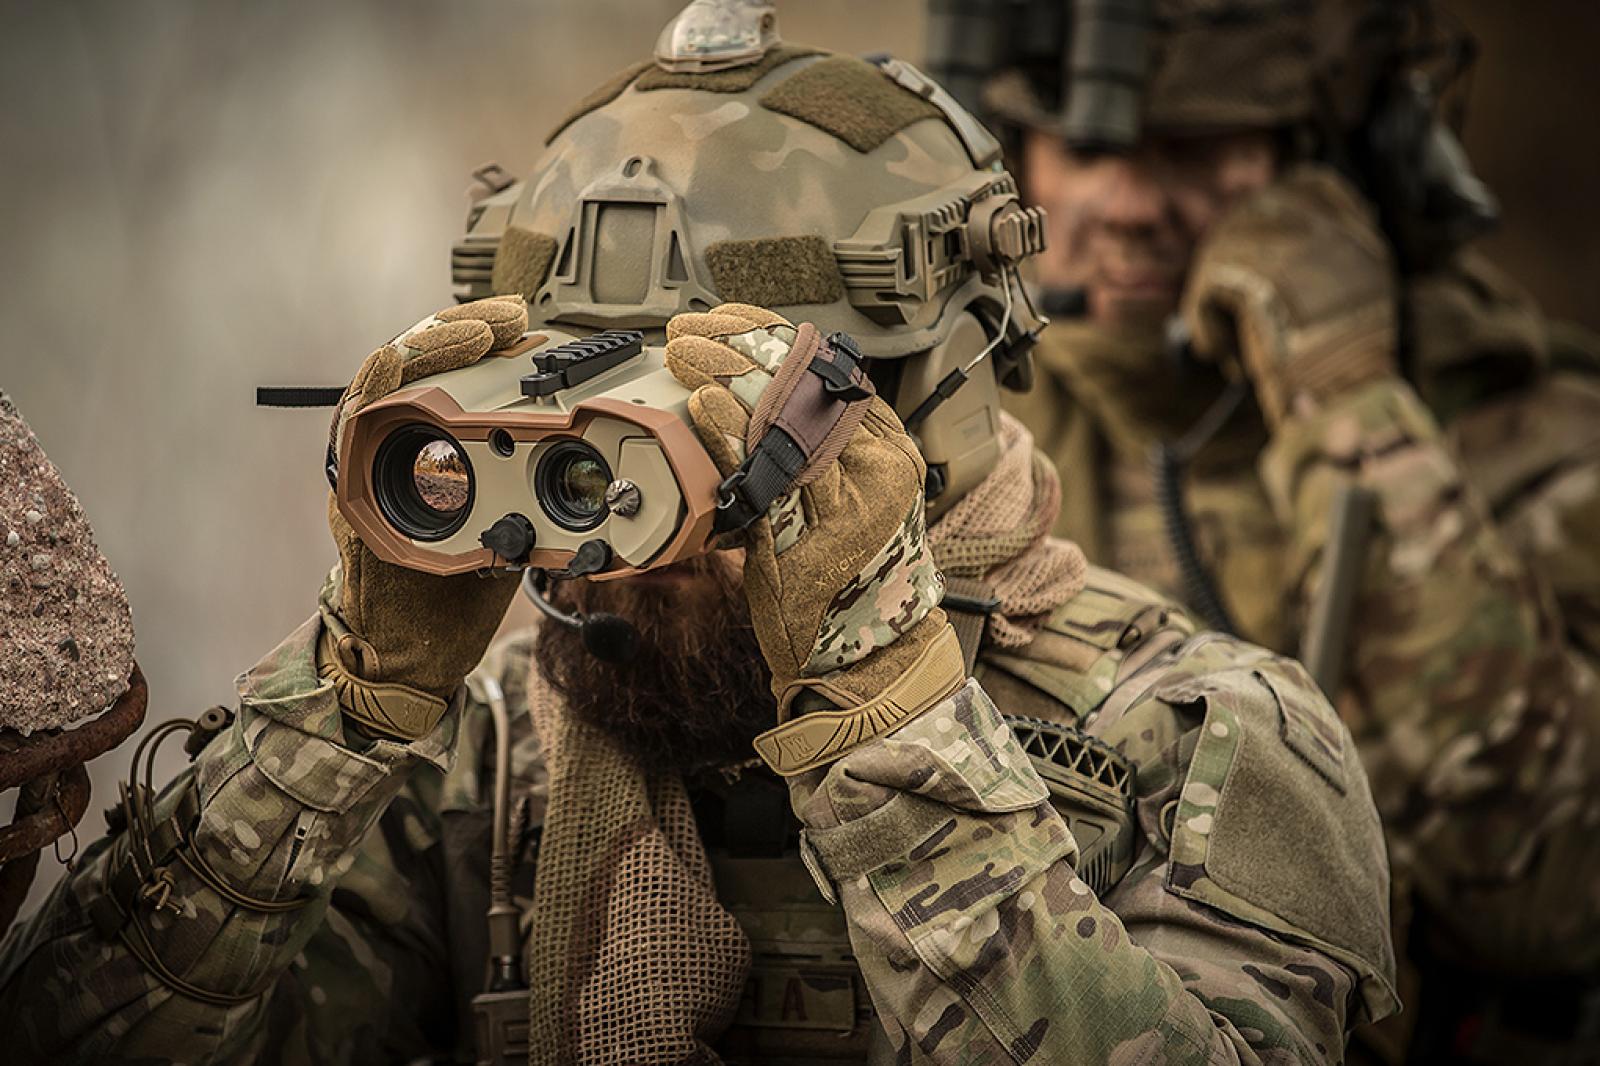 Soldat sieht durch Militär Fernglas hindurch.